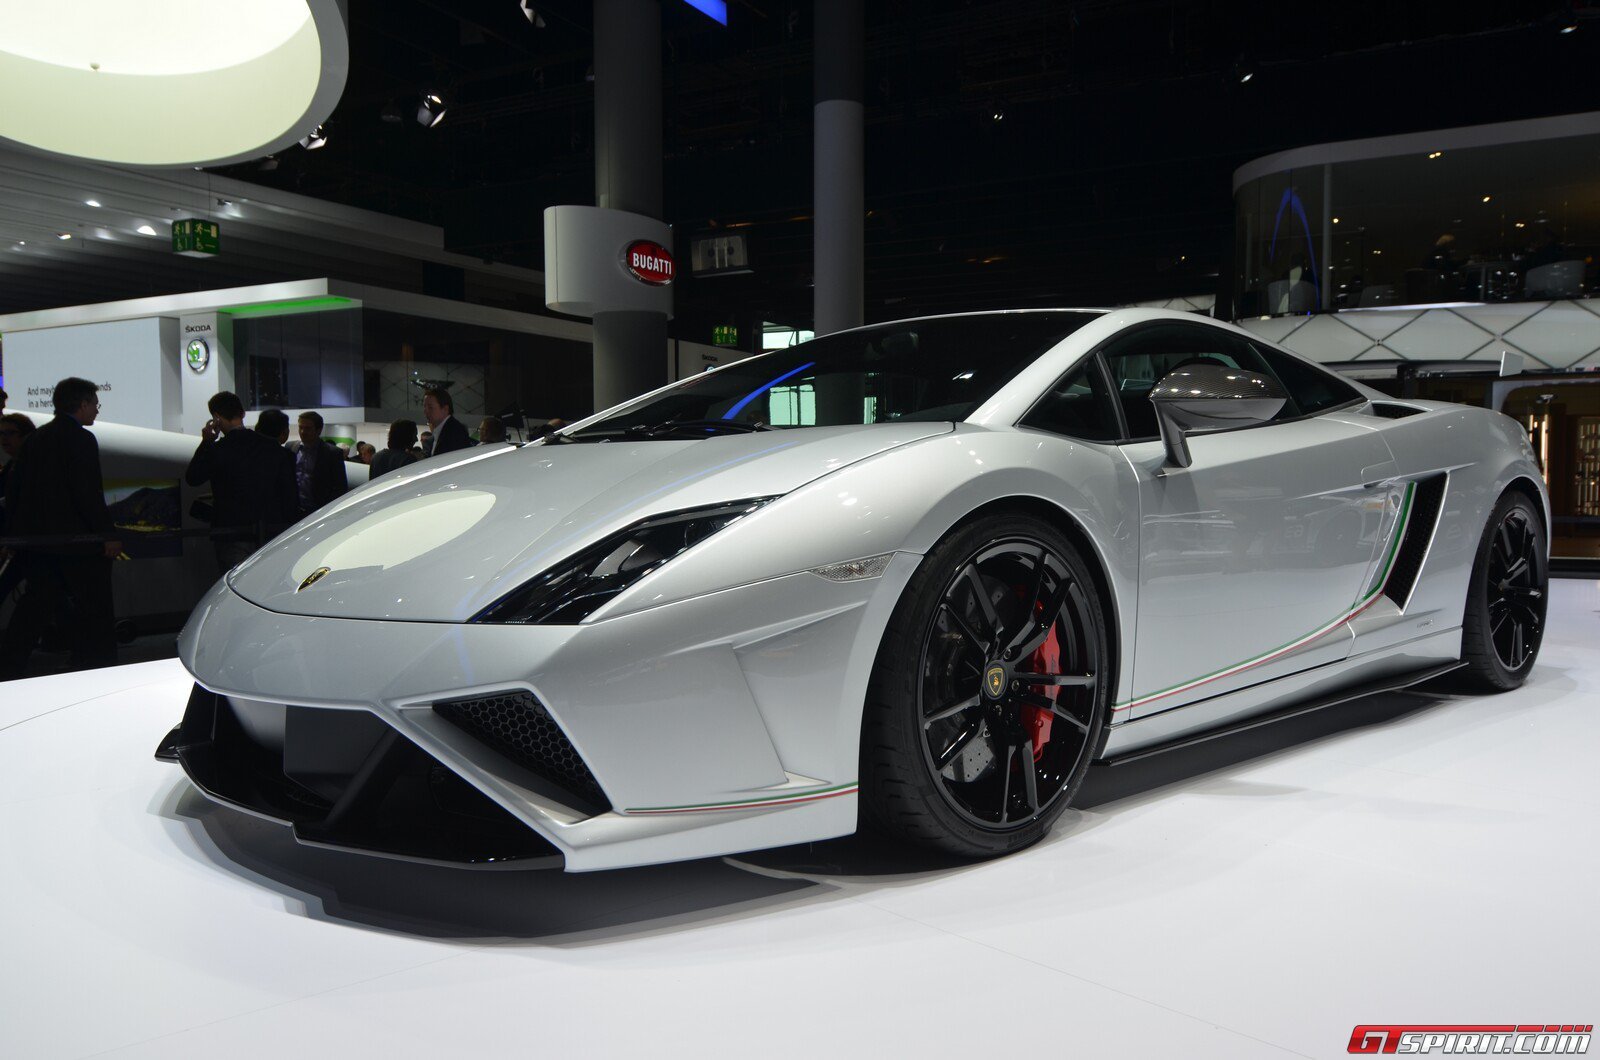 2013, Lamborghini, Gallardo, Lp, 570 4, Squadra, Corse, Italian, Dreamcar, Supercar, Exotic, Grigio, Grise, Gray Wallpaper